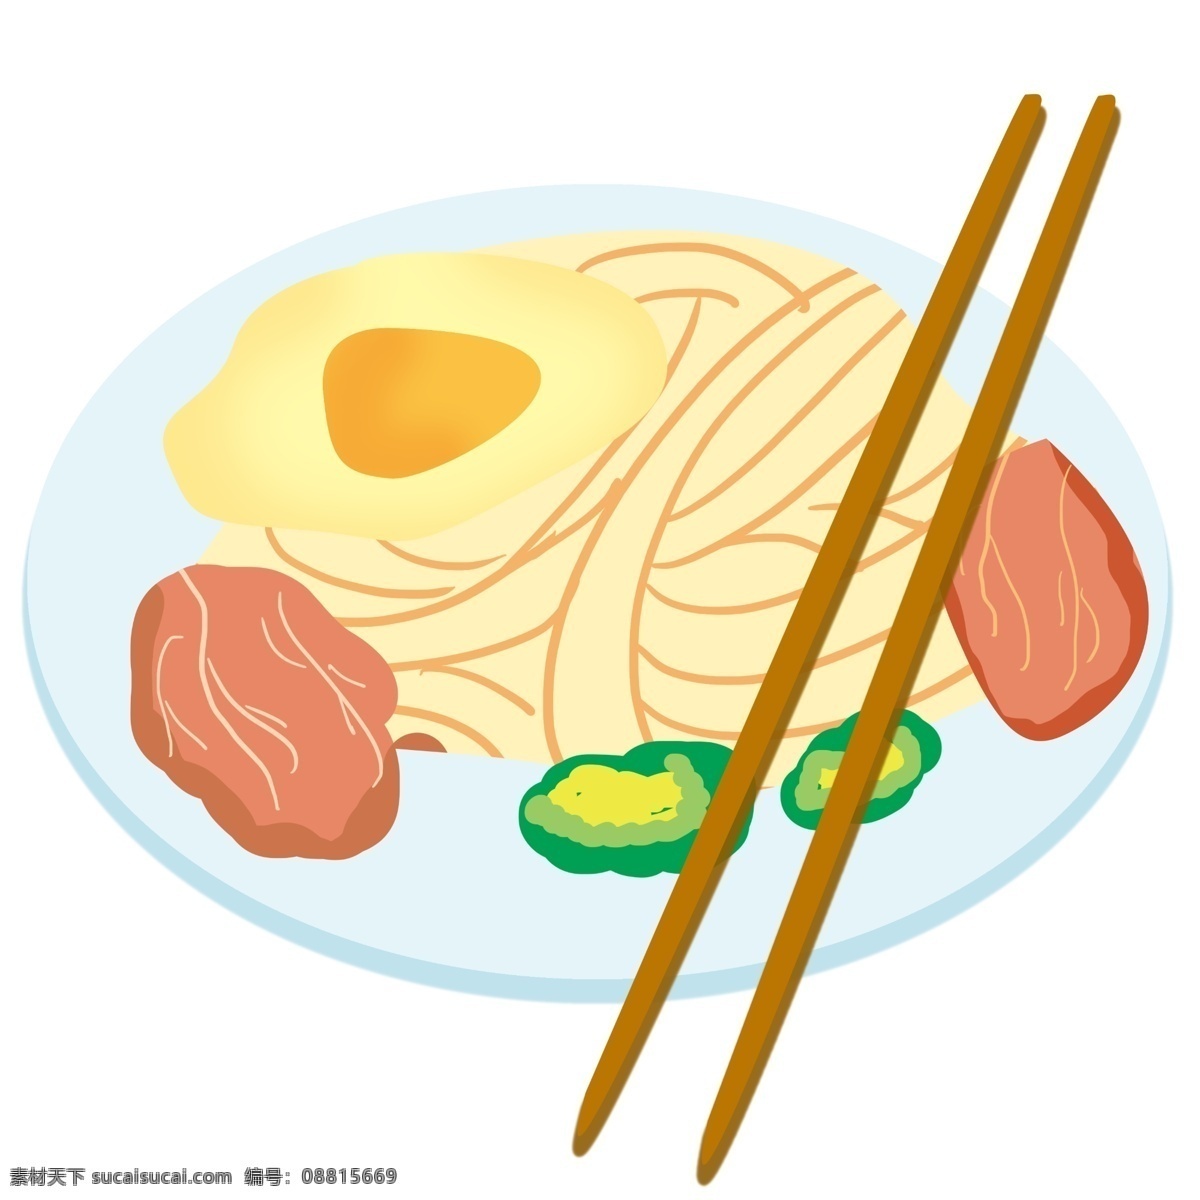 精致 美味 面条 插画 白色的盘子 精美的食物 食物 拉面 面条插画 筷子 卡通食物插画 美味拉面